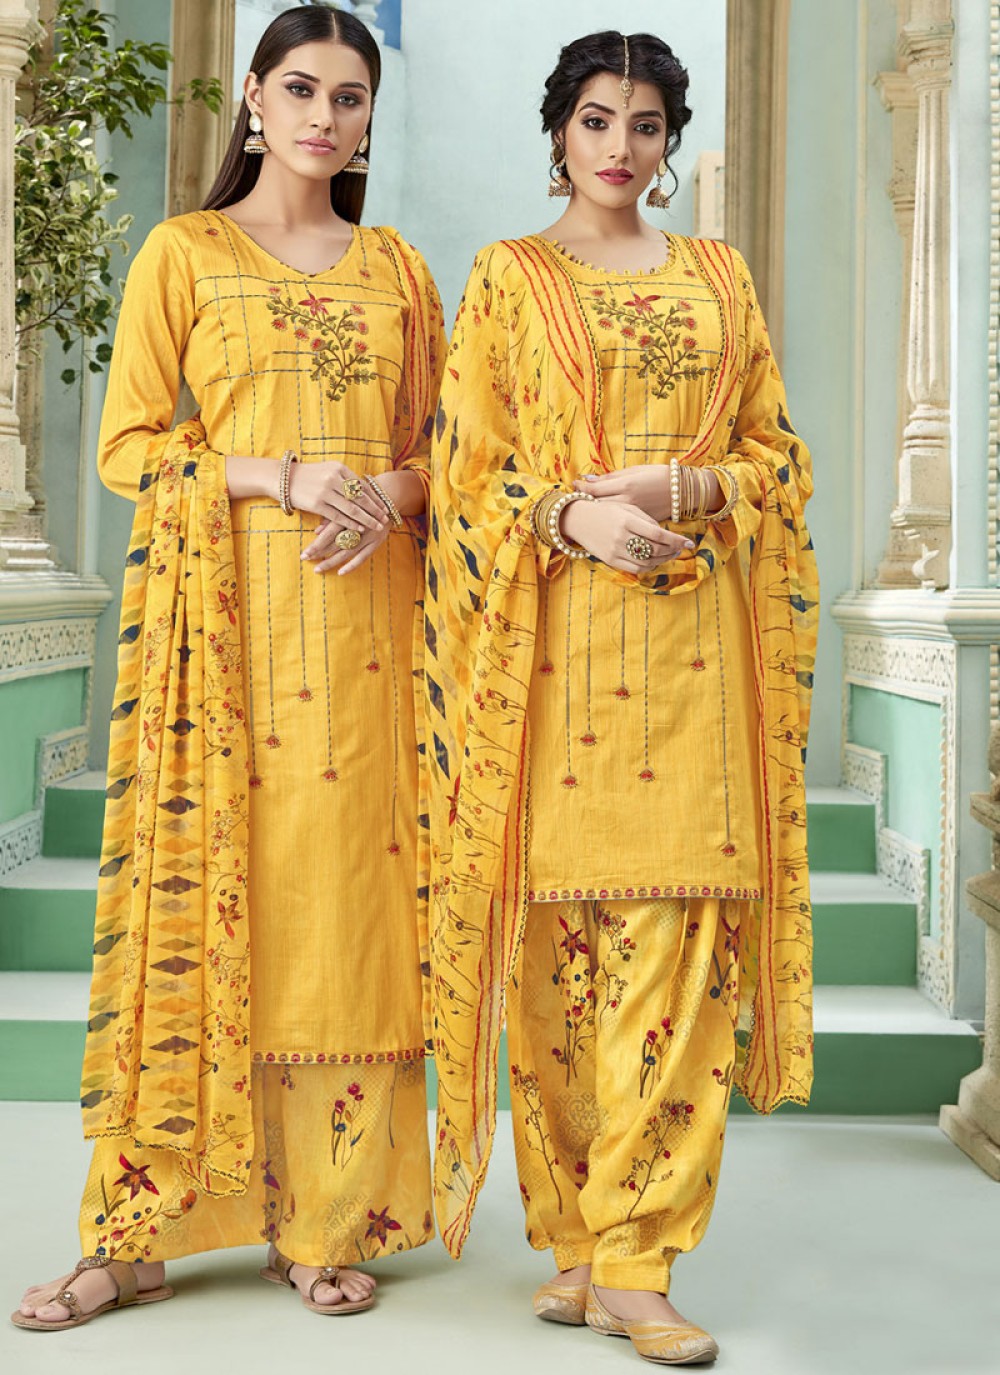 Ruhi singh wearing punjabi suit salwar dupatta photos | Trendy dress  outfits, Tight dress outfit, Punjabi girls